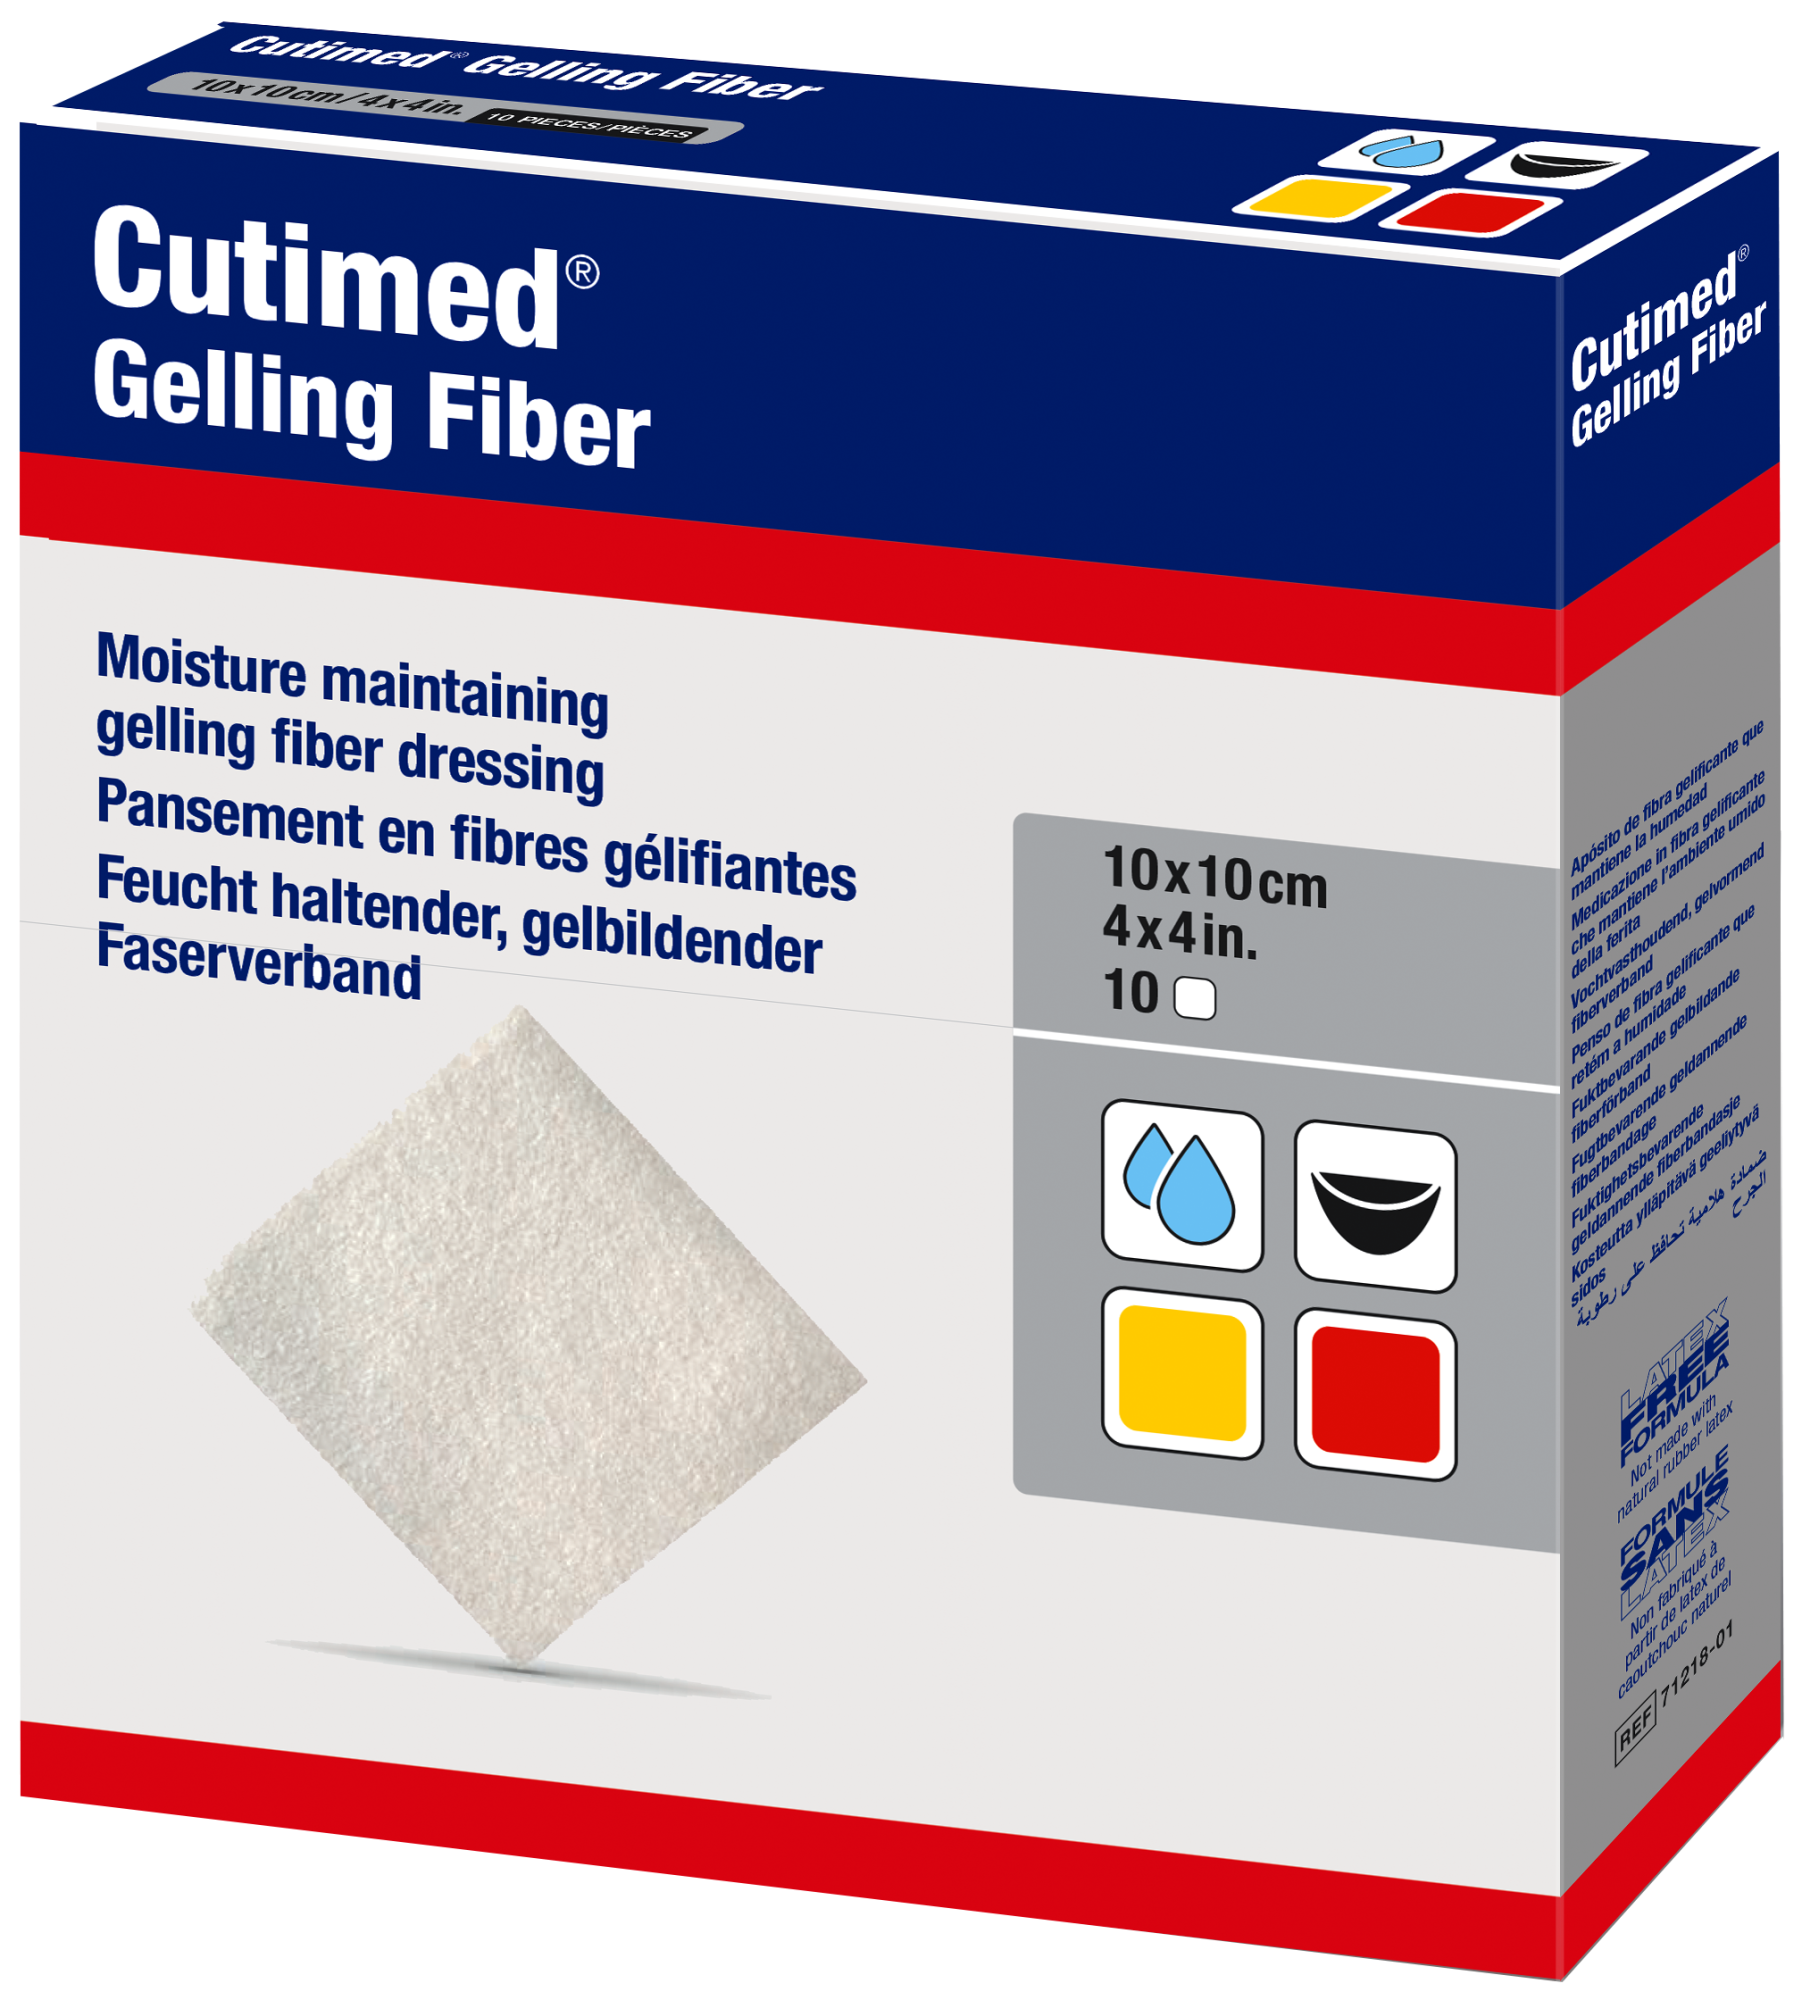 Image showing a packshot of Cutimed Gelling Fiber 